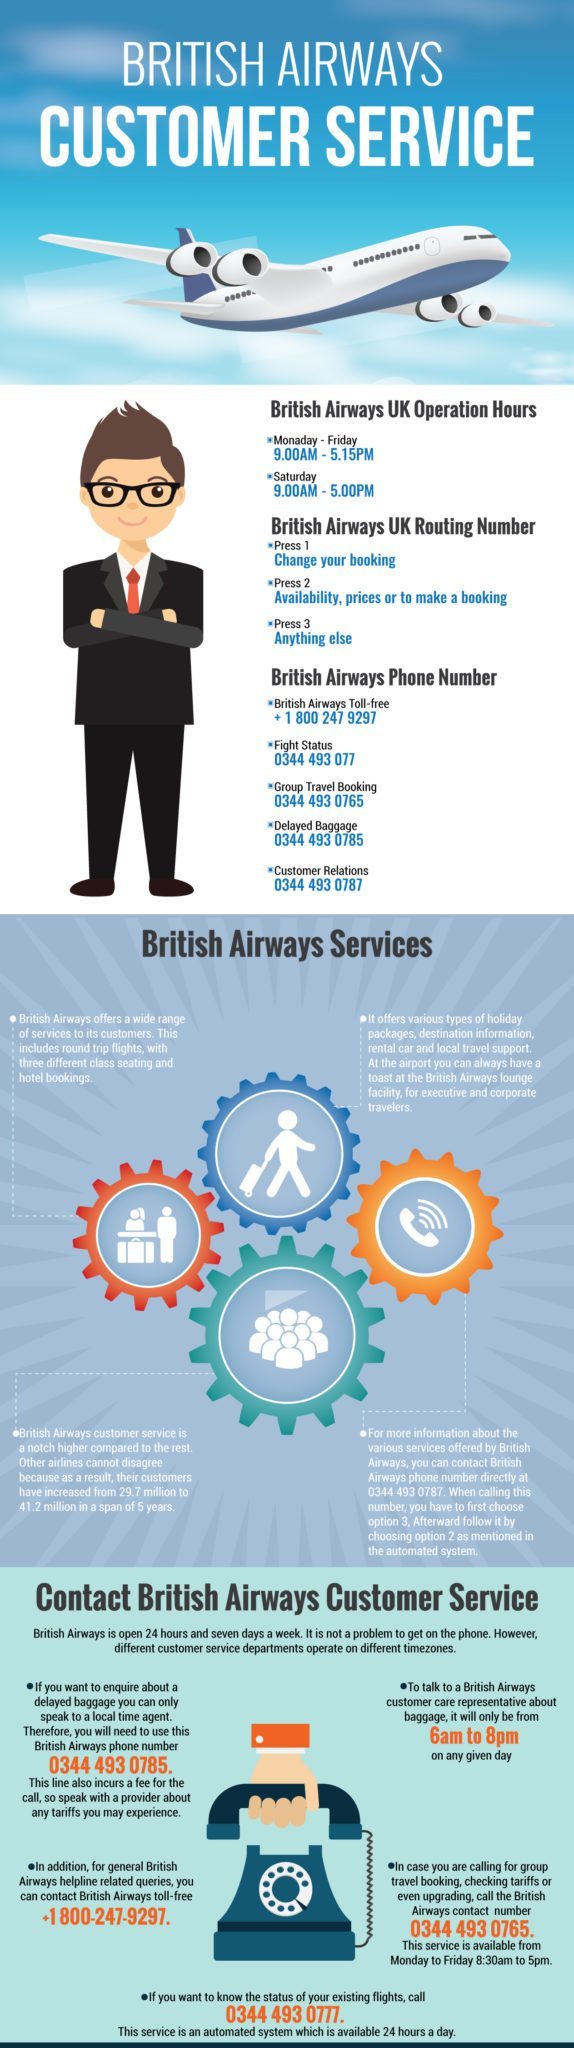 British Airways customer service